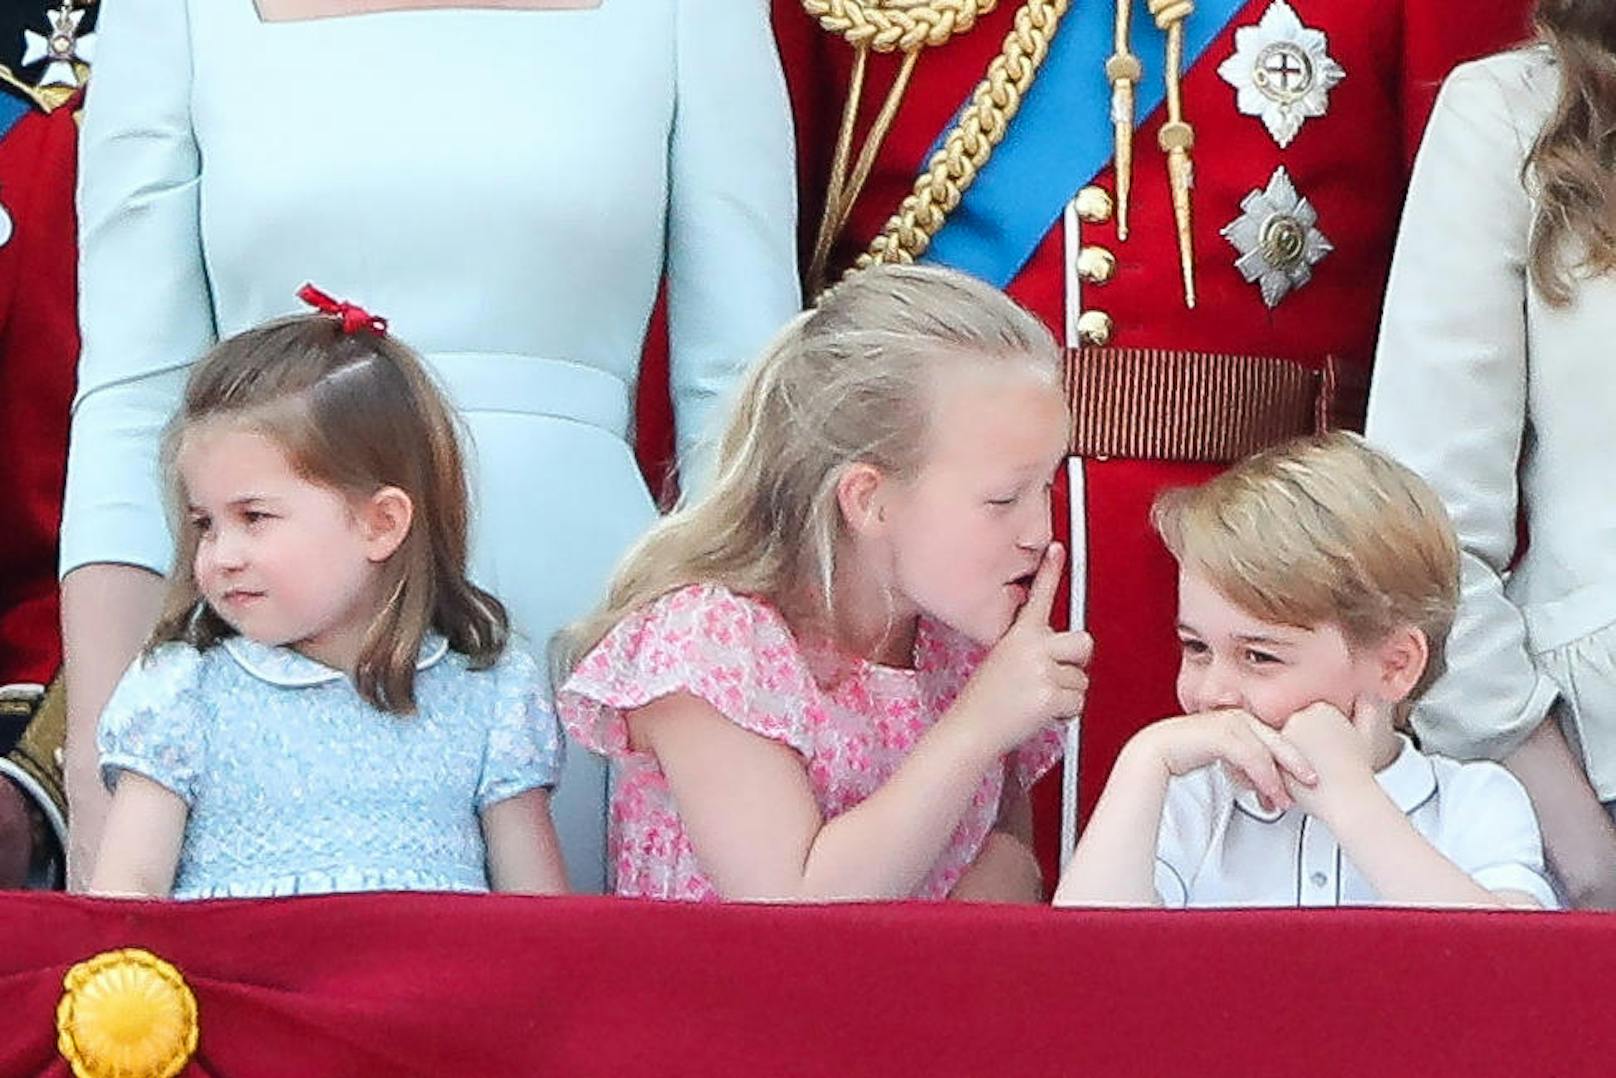 Und wieder mal blitzt Prinz George der Schalk aus den Augen. Diesmal ist es Savannah Phillips, die am königlichen Balkon dem royalen Verwandten den Mund verbietet. Die kleine Savannah ist ebenfalls blaublütig. Sie ist eine Urenkelin der Queen. Ihre Oma ist Anne, die Schwester von Prinz Charles.